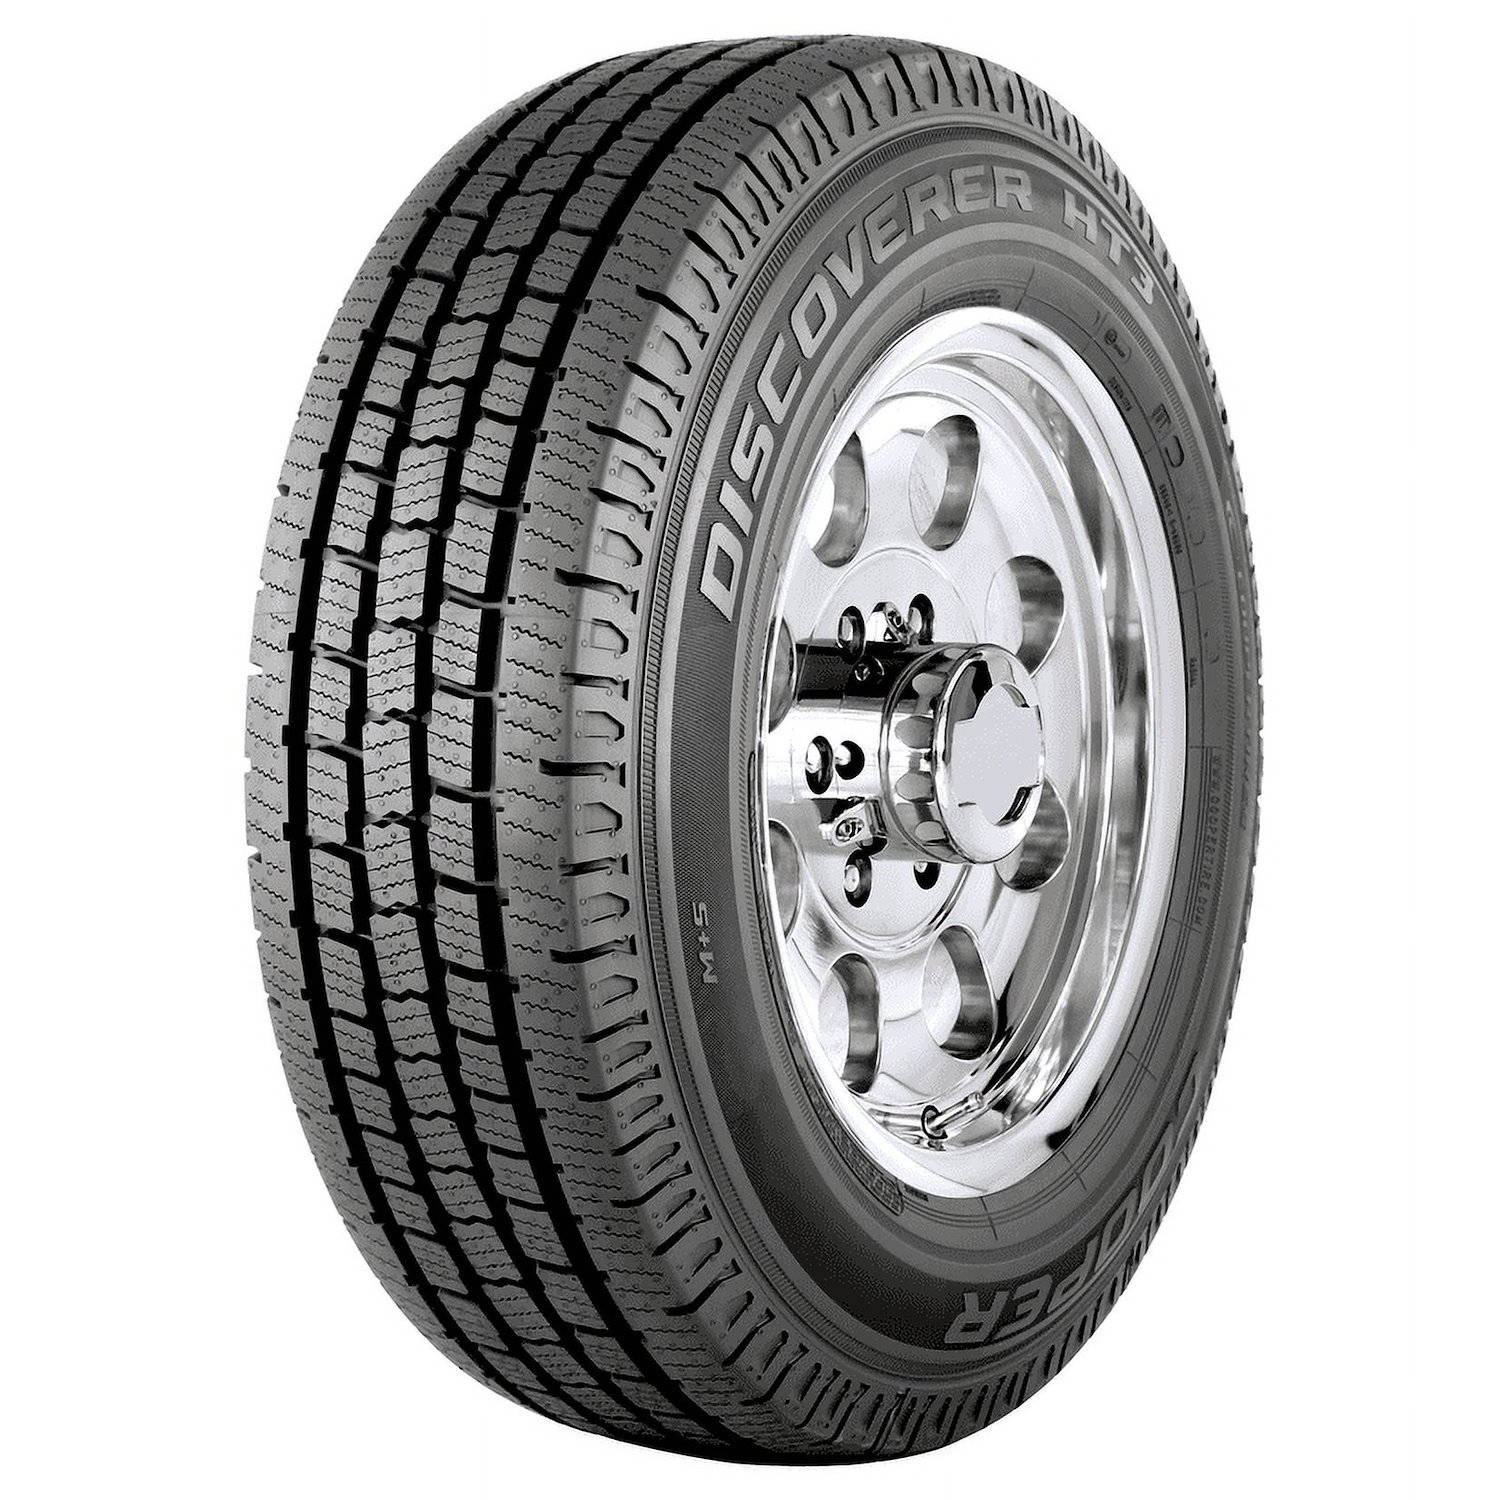 Discoverer HT3 All-Terrain Tire, LT235/85R16